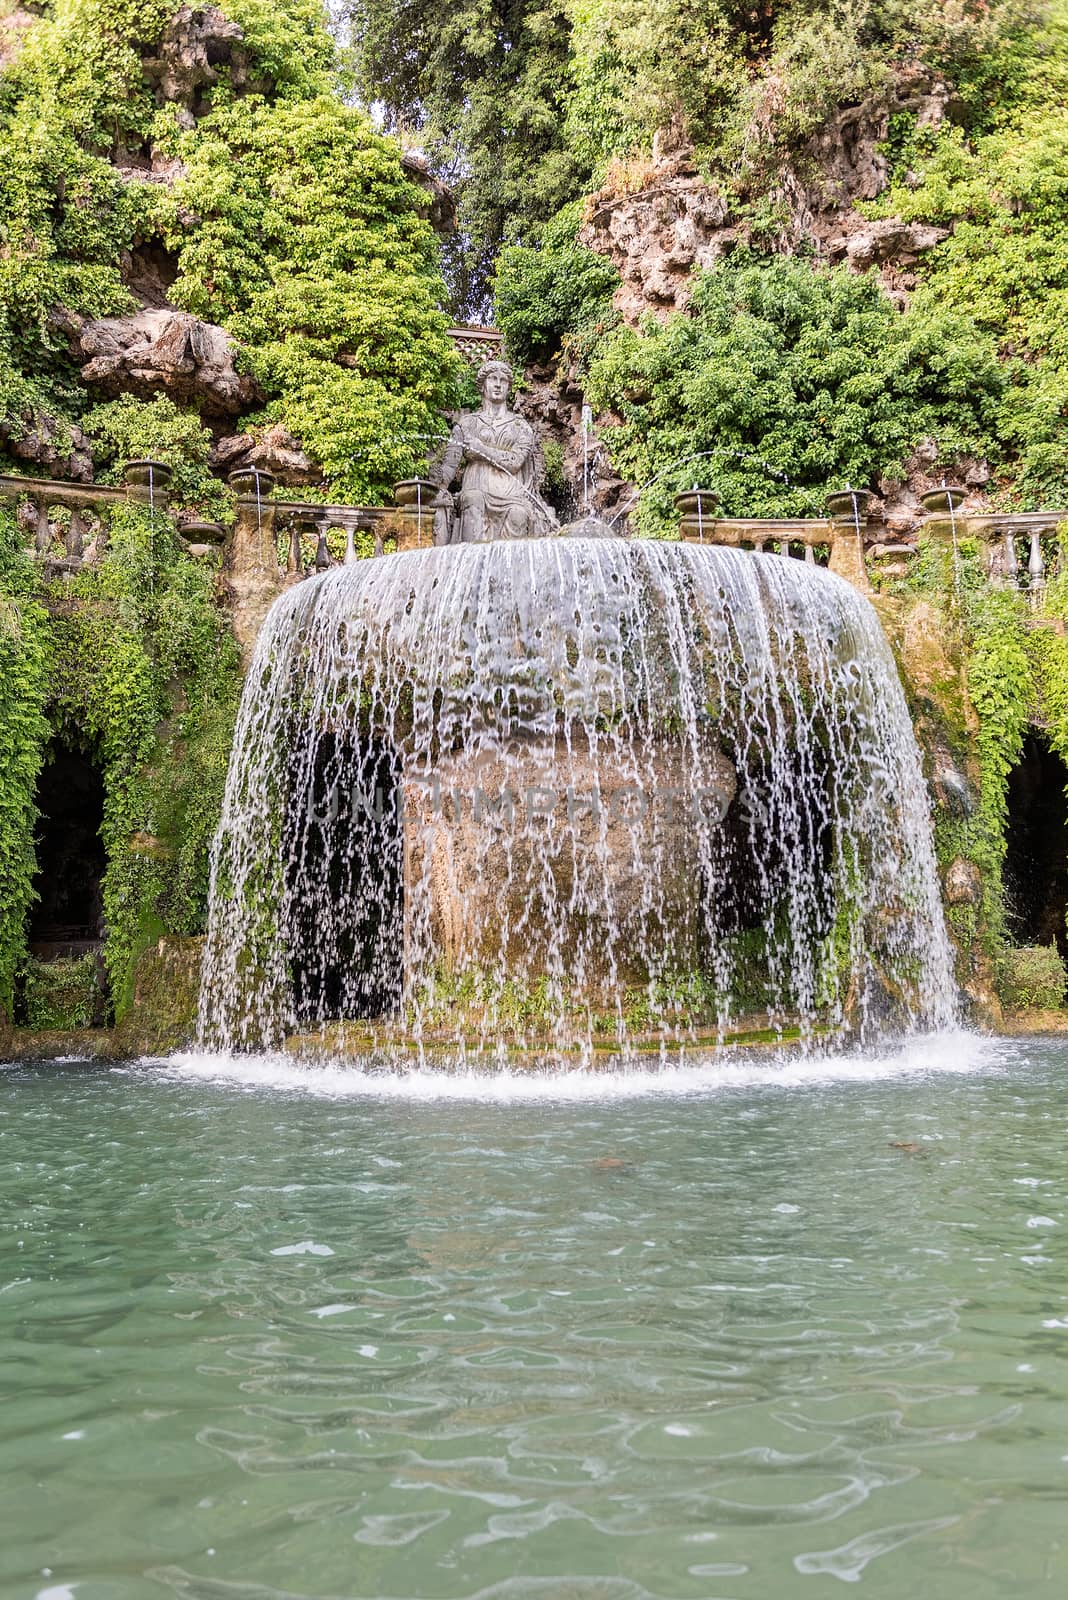 The Oval Fountain in Villa d'Este, Tivoli, Italy by marcorubino